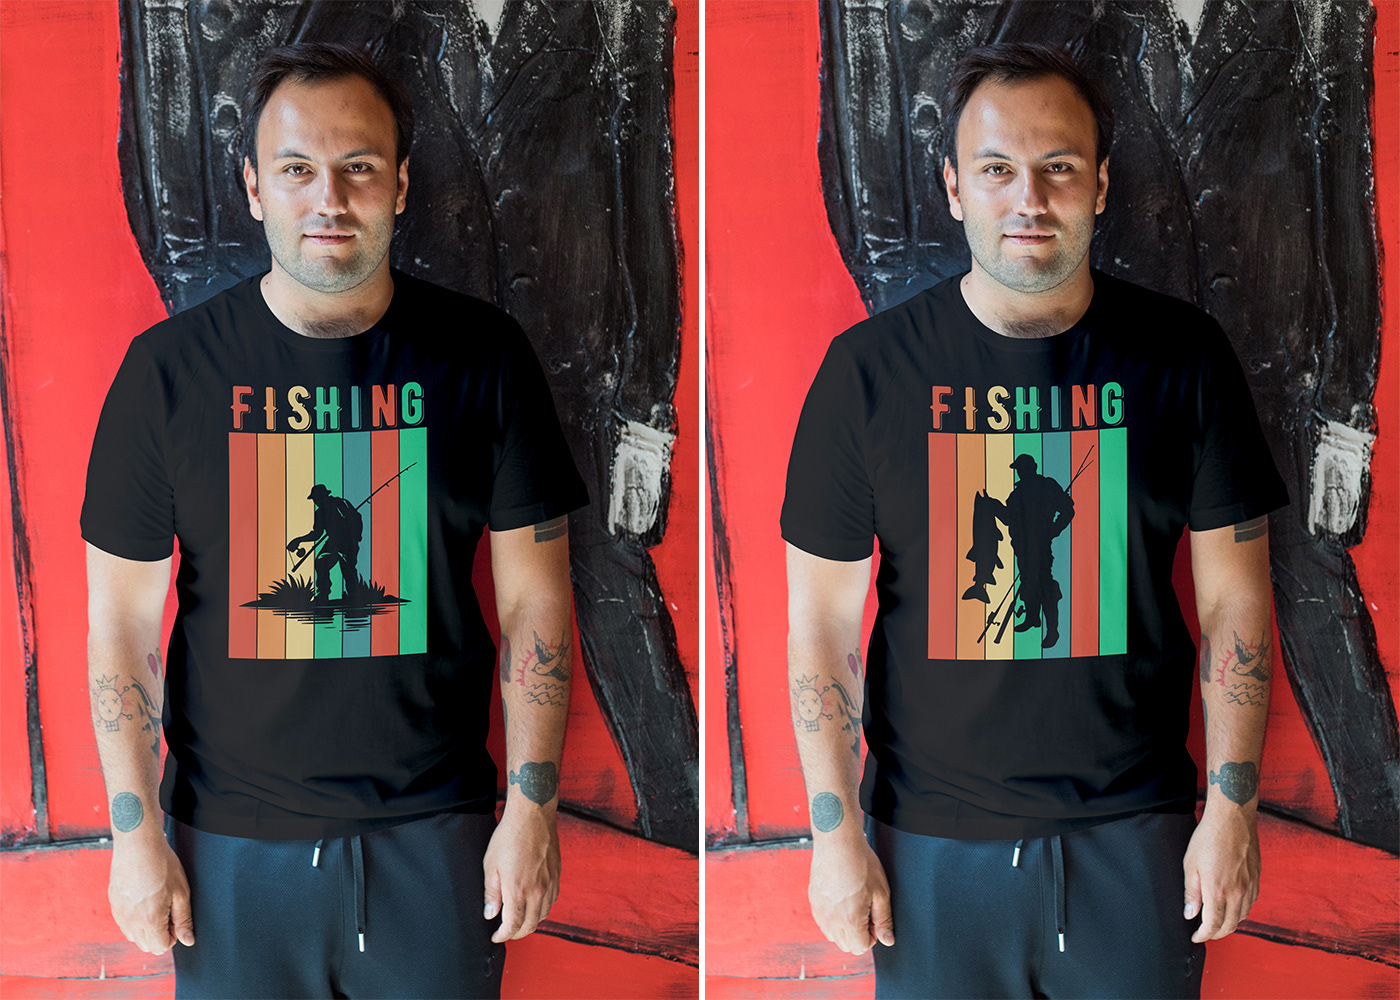 t-shirt T-Shirt Design tshirt Tshirt Design t-shirt designer fishing fishing t-shirt fishing t-shirt design Outdoor T-Shirt Design ideas